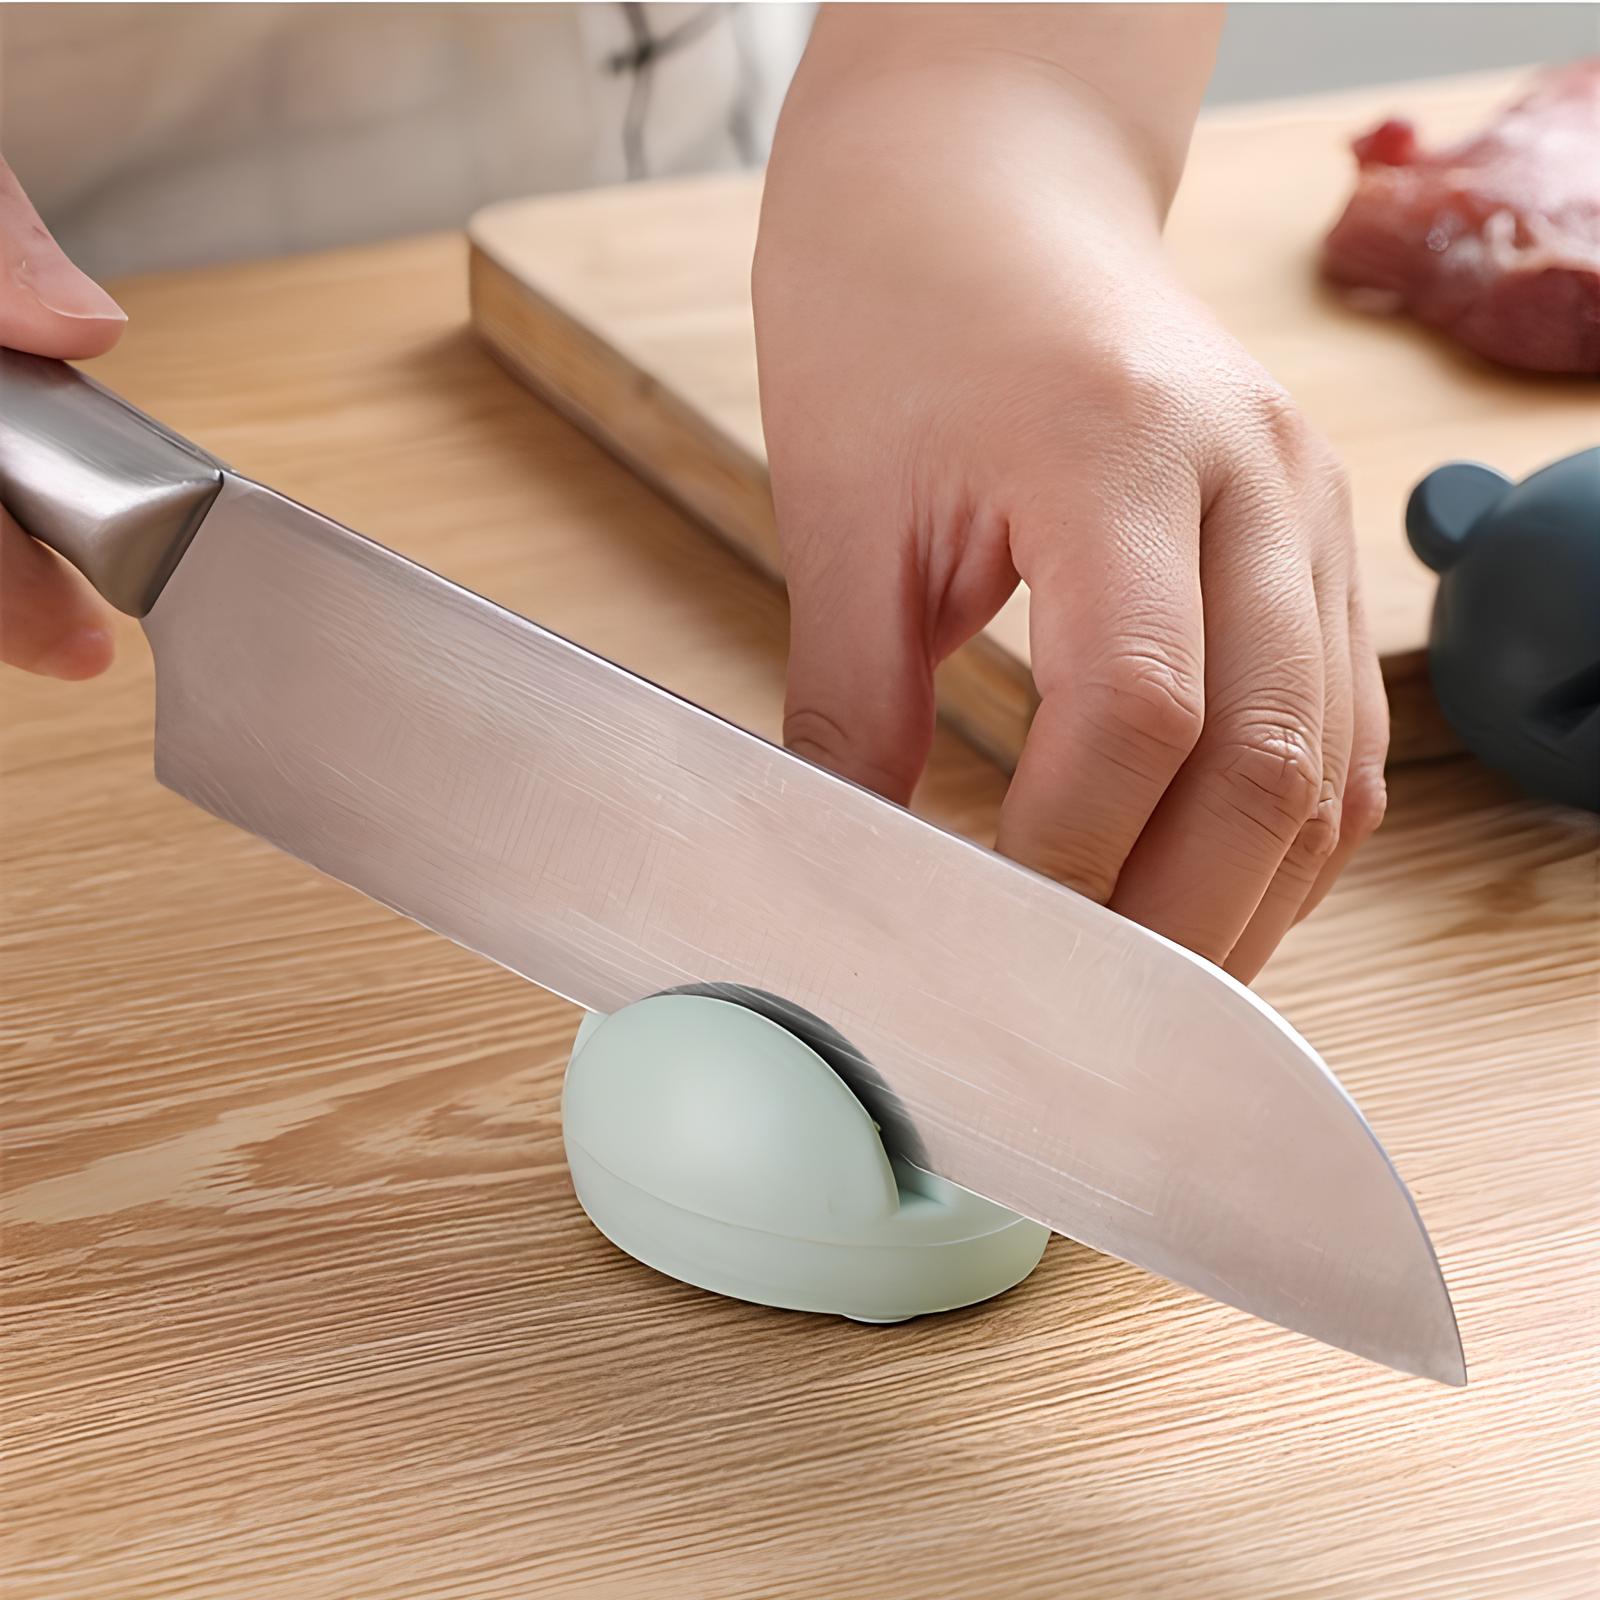 Mini aiguiseur de couteaux et de ciseaux - UstensilesCulinaires